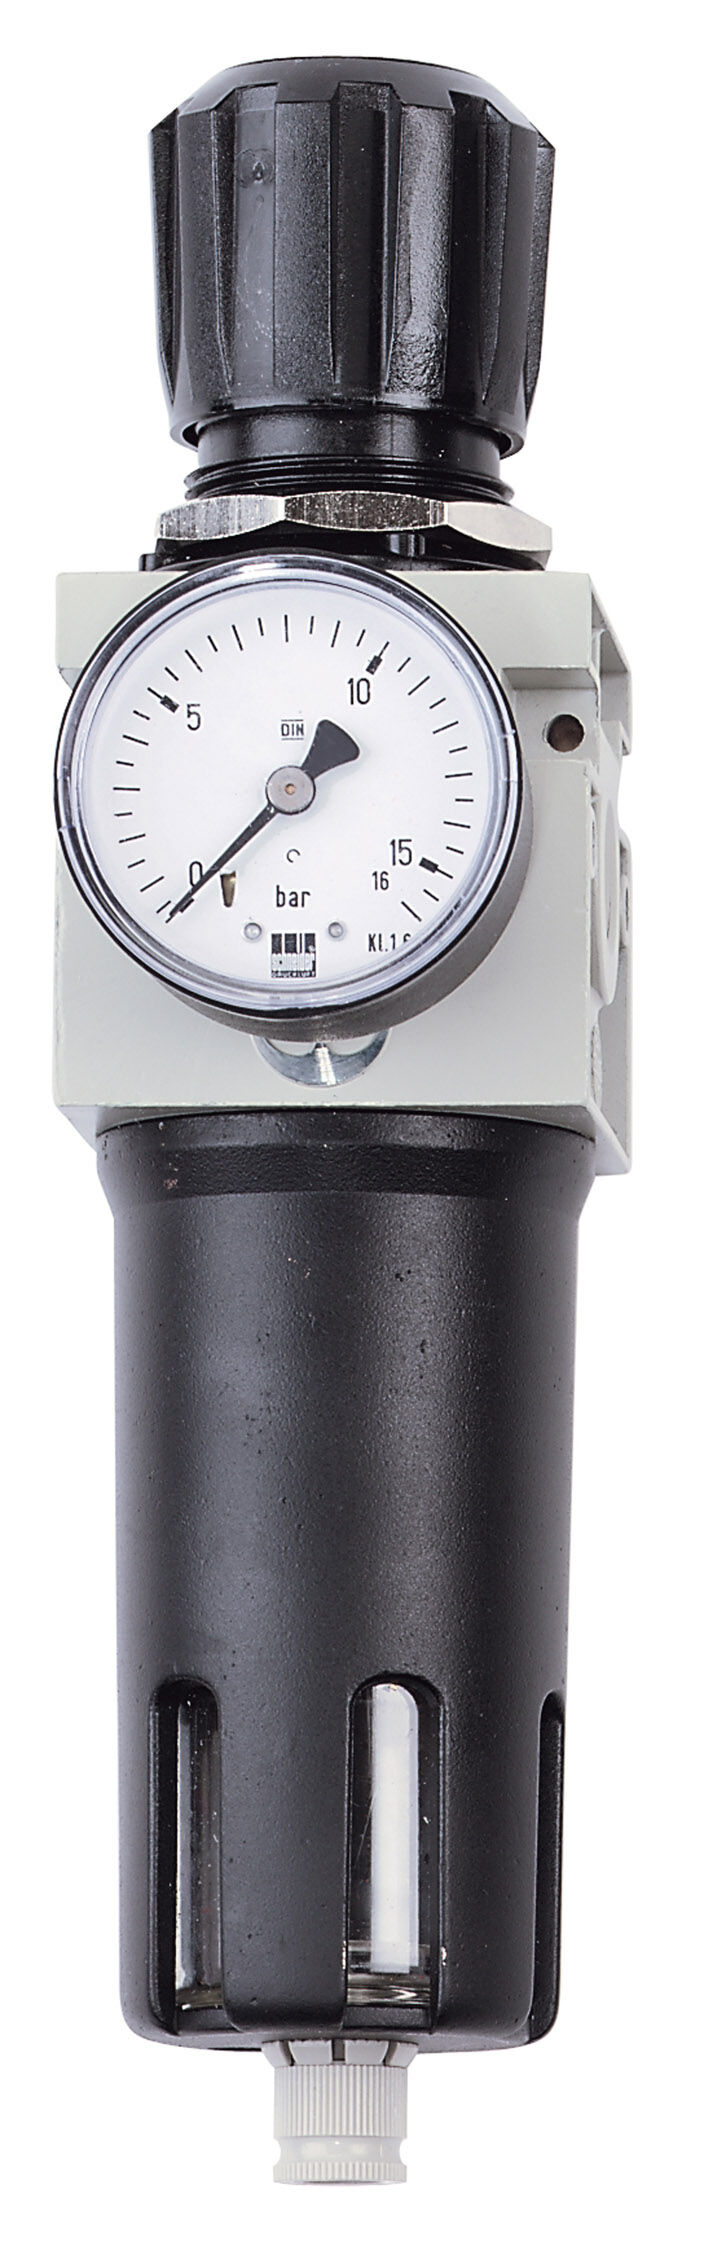 Filtro riduttore di pressione Schneider FDM 1 W DGKD468305